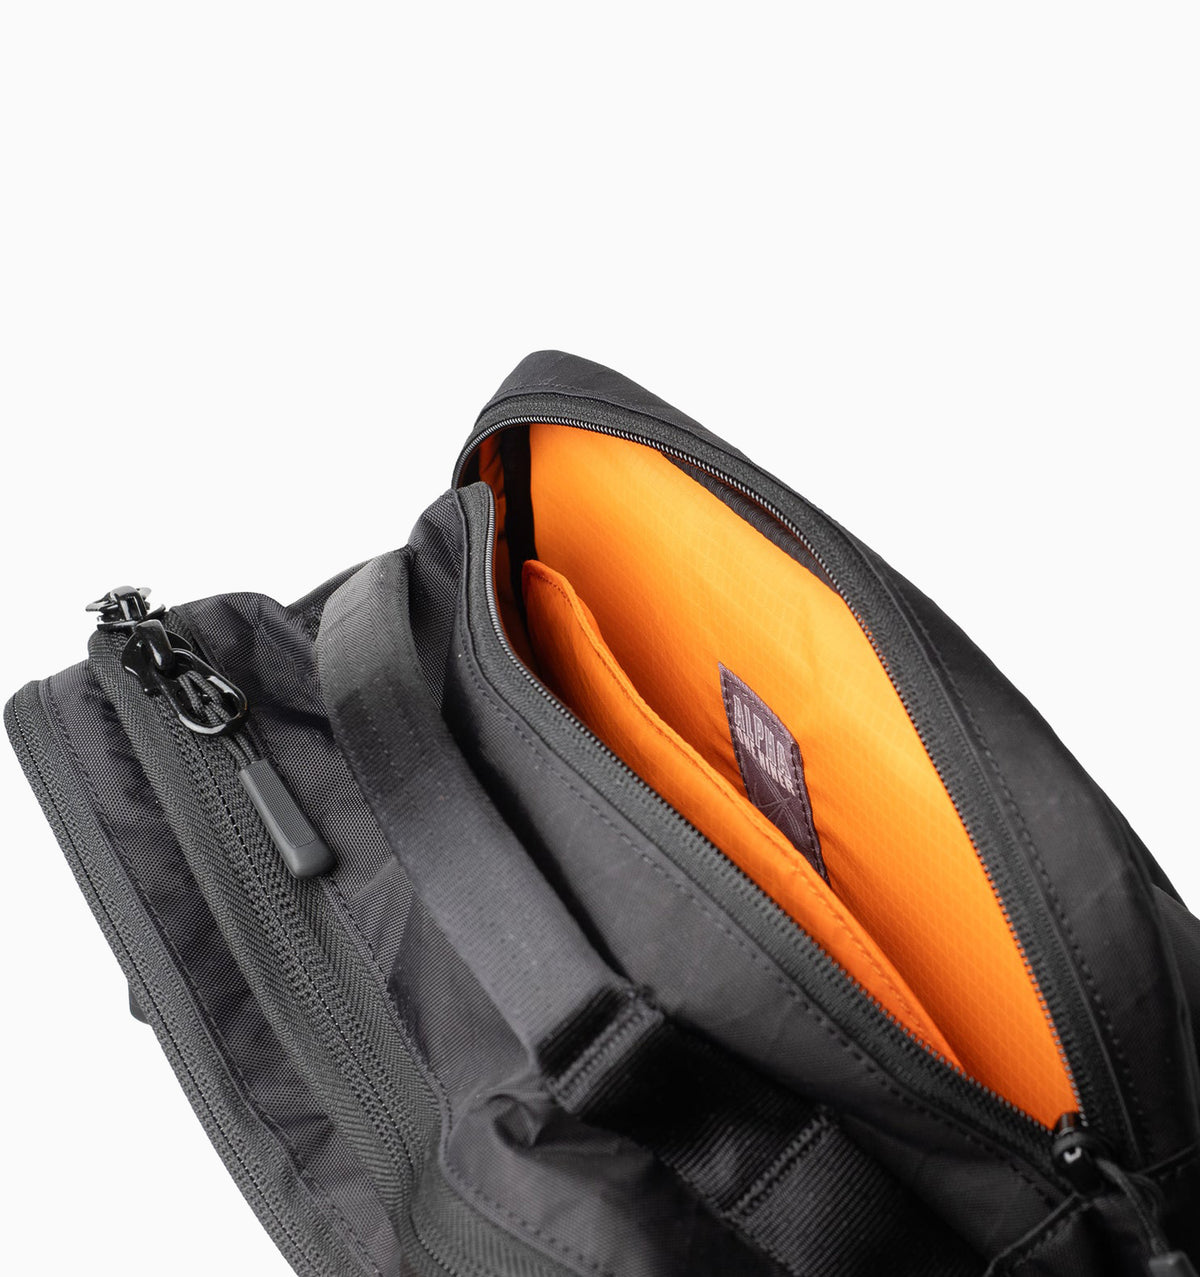 Alpha One Niner 16" Whitley Backpack 20L - Black VX42